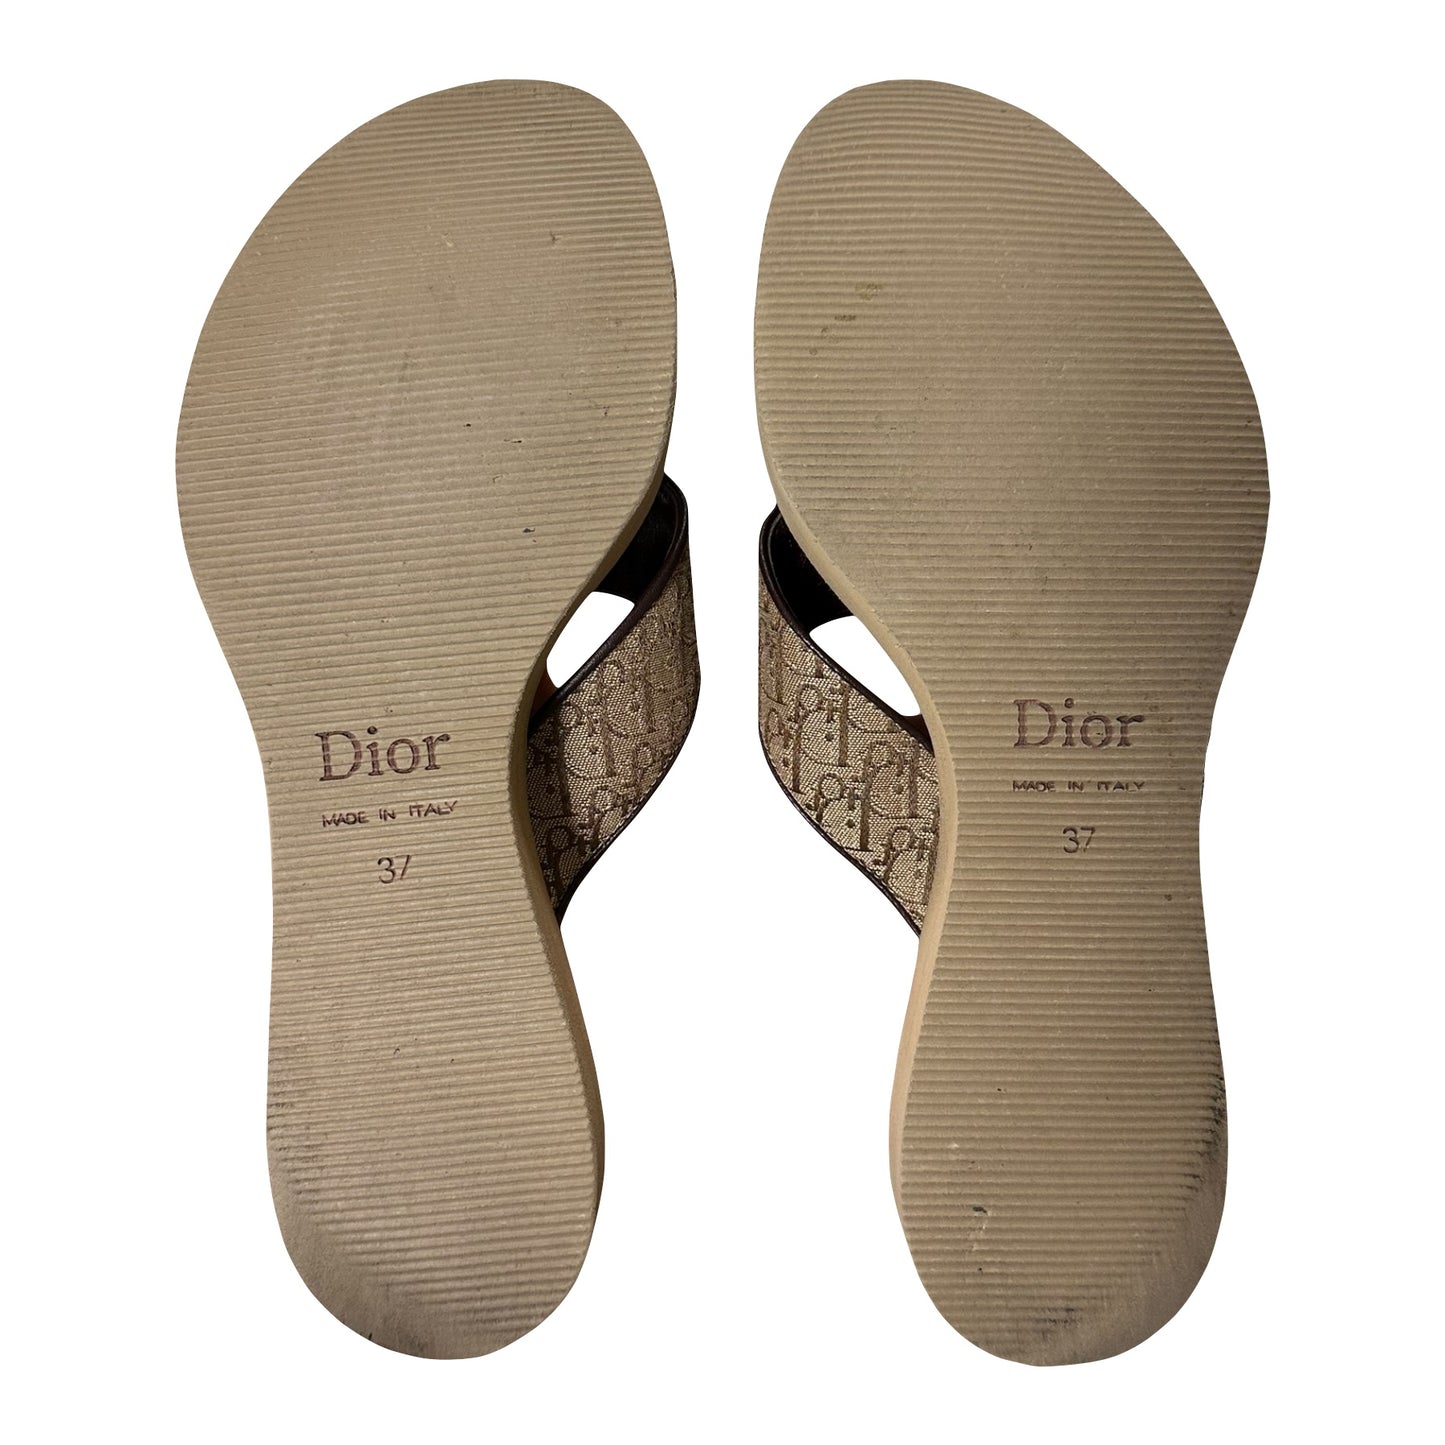 CHRISTIAN DIOR Spring Summer 2005 Trotter Flip-Flop Sandals